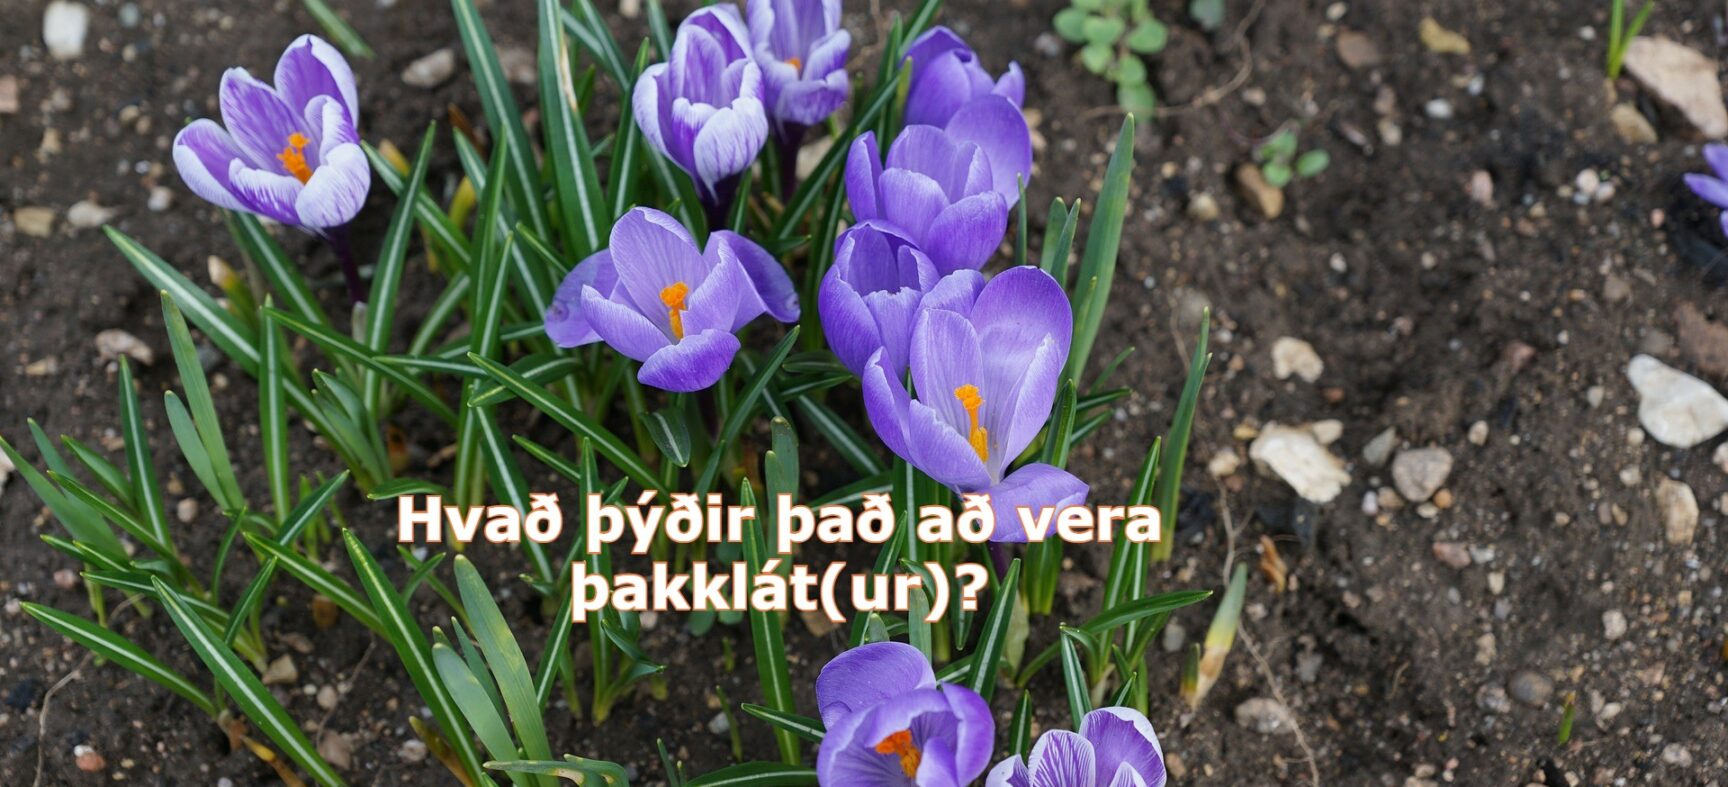 Hvað þýðir það að vera þakklát(ur)?